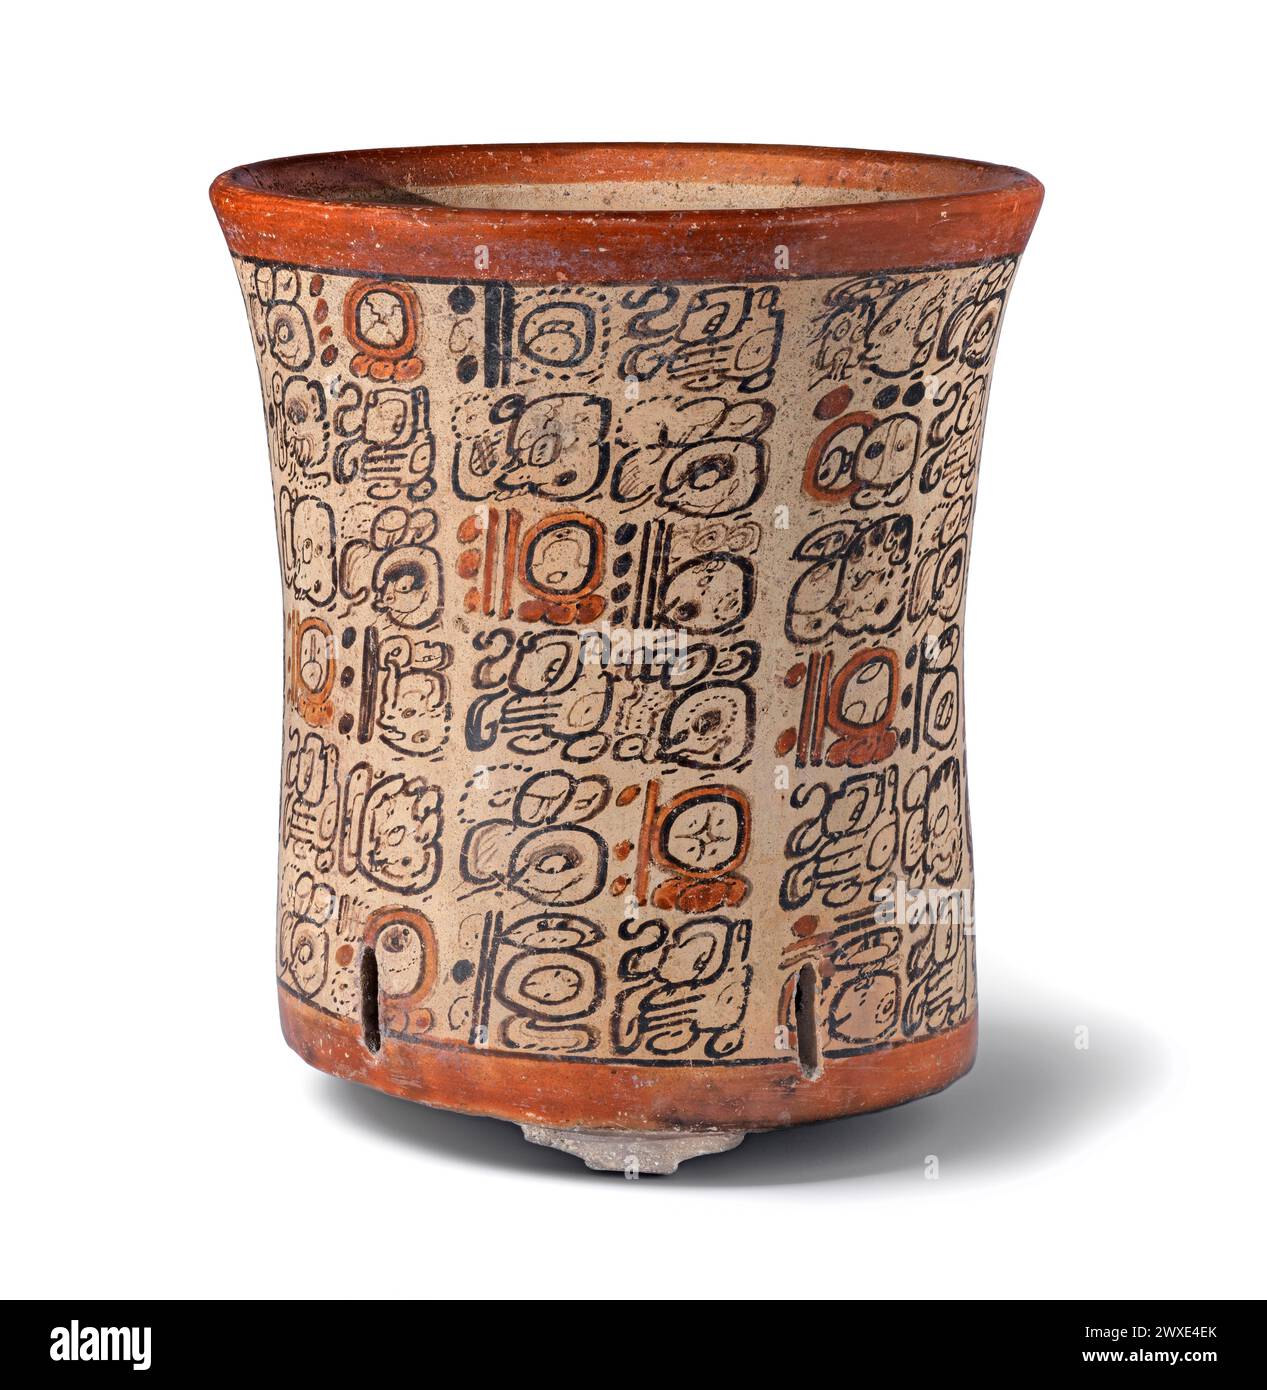 Dynastic Vase. Mexiko oder Guatemala, Süd-Campeche oder Nord-Peten Region, Mirador Basin, Maya, 650-800 n. Chr. Keramik. Rutschlackierte Keramik. Gefäß mit sehr esoterischen Szenen, die die grundlegenden Konzepte des religiösen Glaubens und der Praxis der Maya und die besondere Rolle der Könige als Teilnehmer im übernatürlichen Reich beschreiben. Elegant bemalte Keramikgefäße bildeten die wichtigste Form des künstlerischen Ausdrucks während der späten Klassik (550-850 n. Chr.) der antiken Maya-Zivilisation, und keines war schöner bemalt als die Codex-Stil. Stockfoto